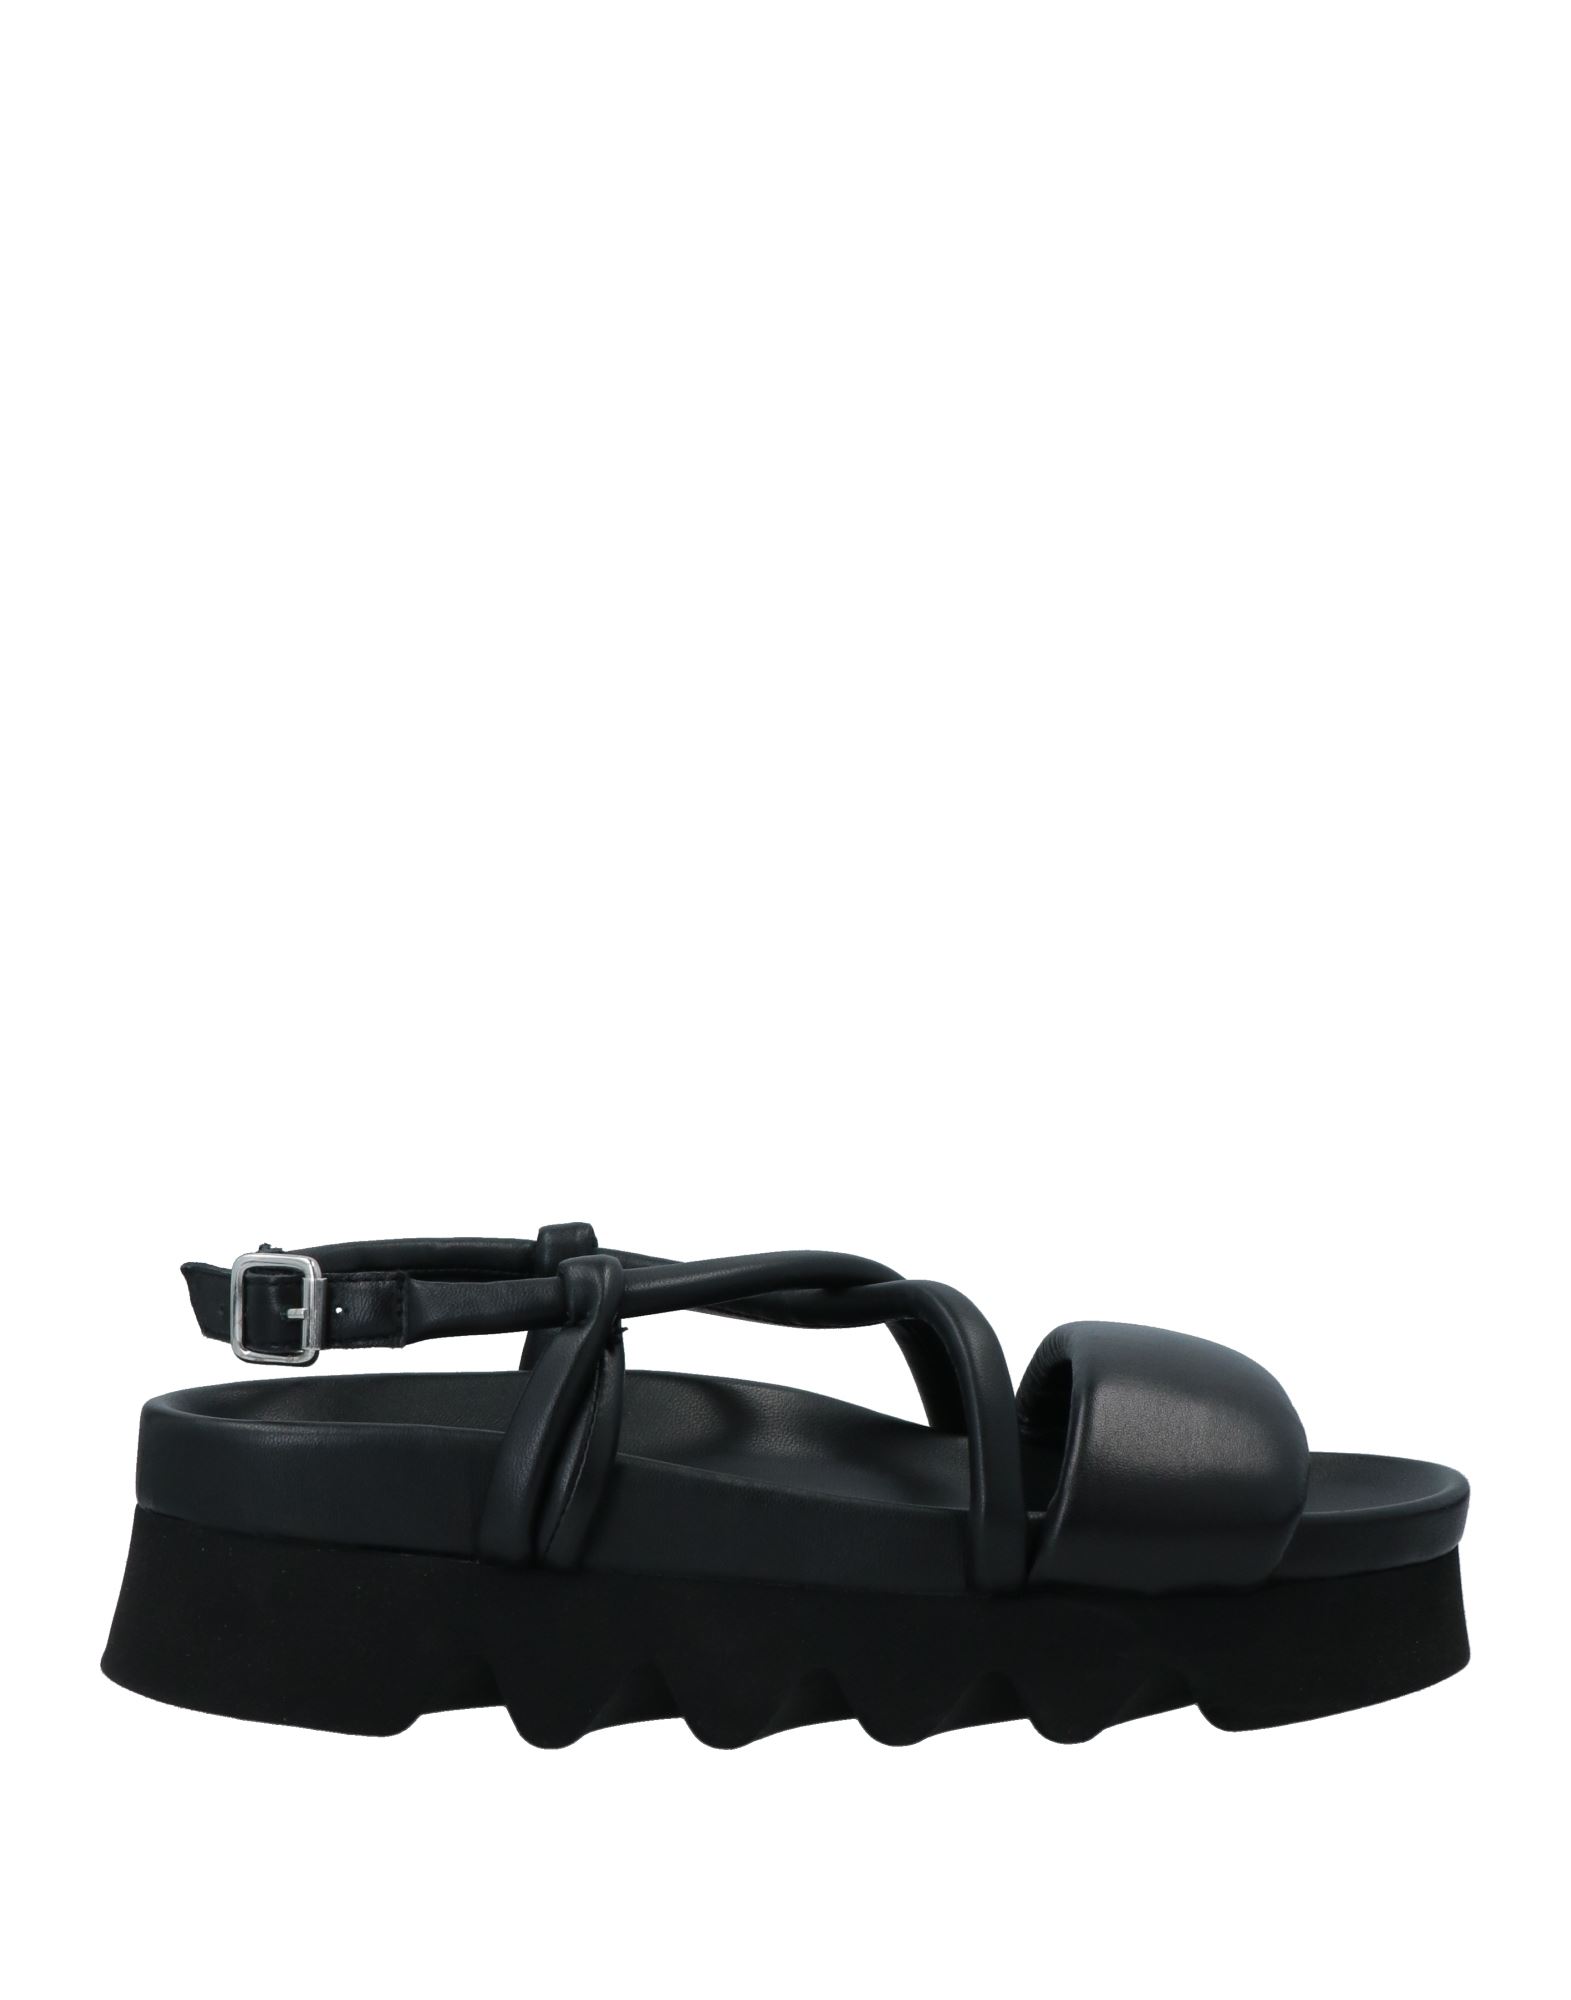 Patrizia Bonfanti Sandals In Black